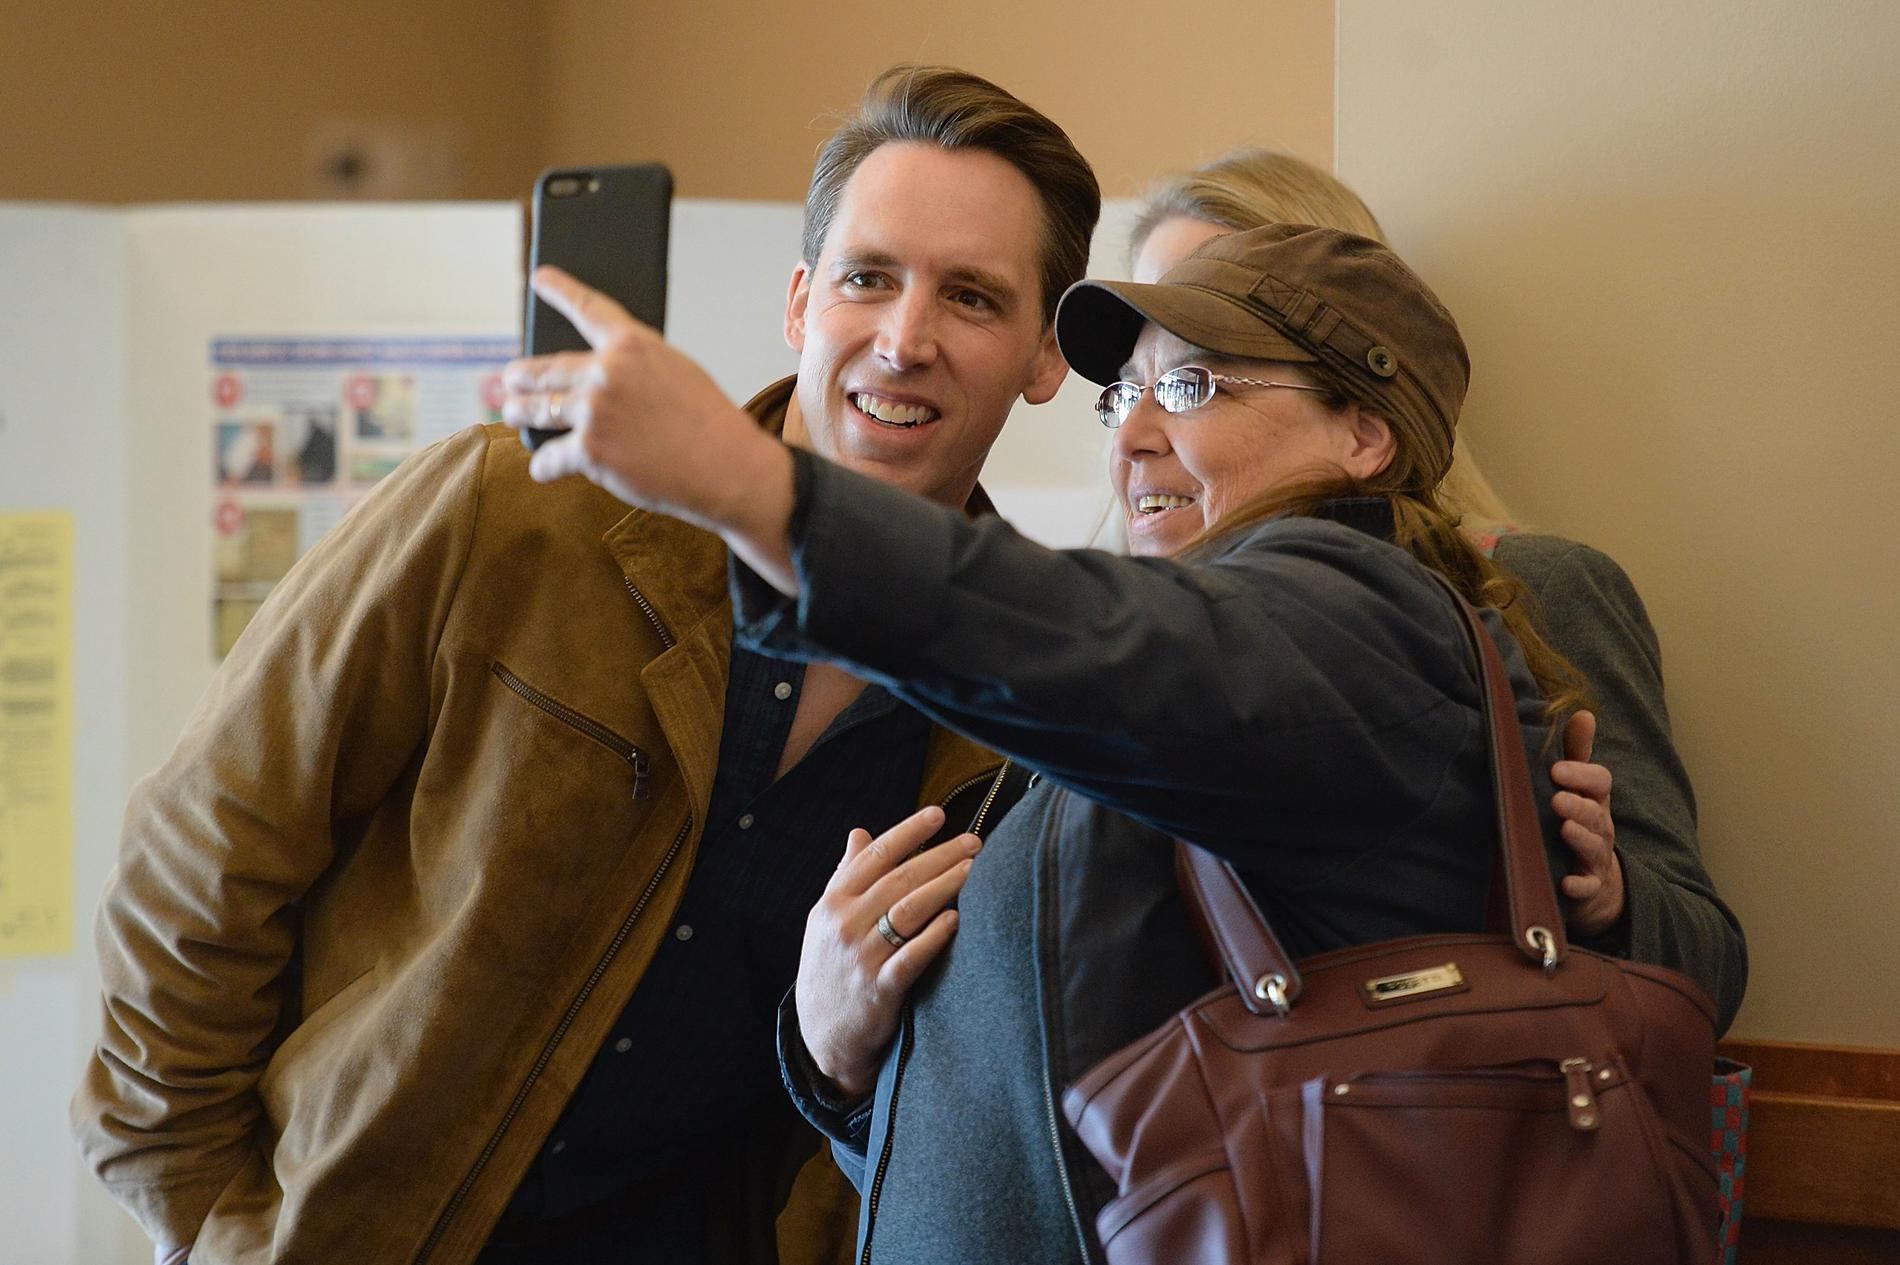 Josh Hawley (R), kandidat till senaten för Missouri tar en selfie ihop min fru och en väljare i valloken i en vallokal i Columbia, Missouri. 